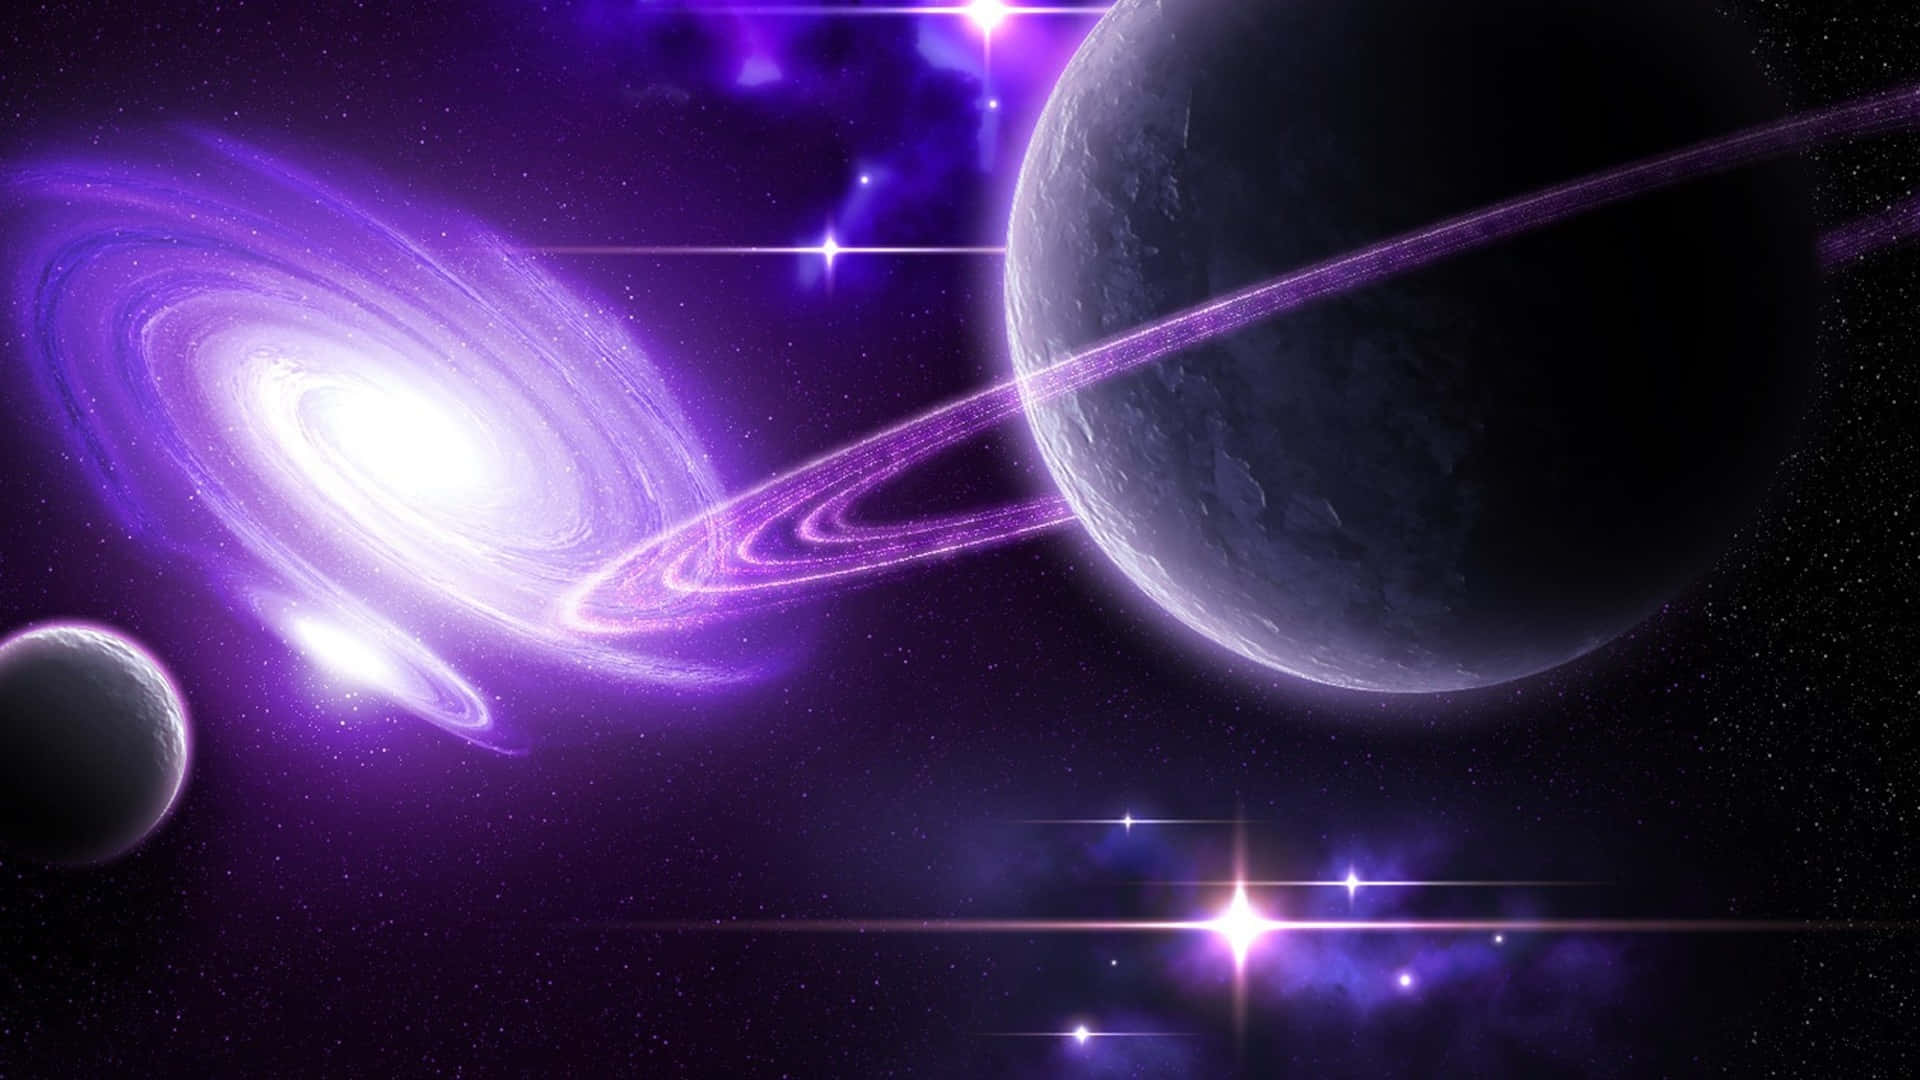 Purple Galaxy - Explore a Colorful Universe